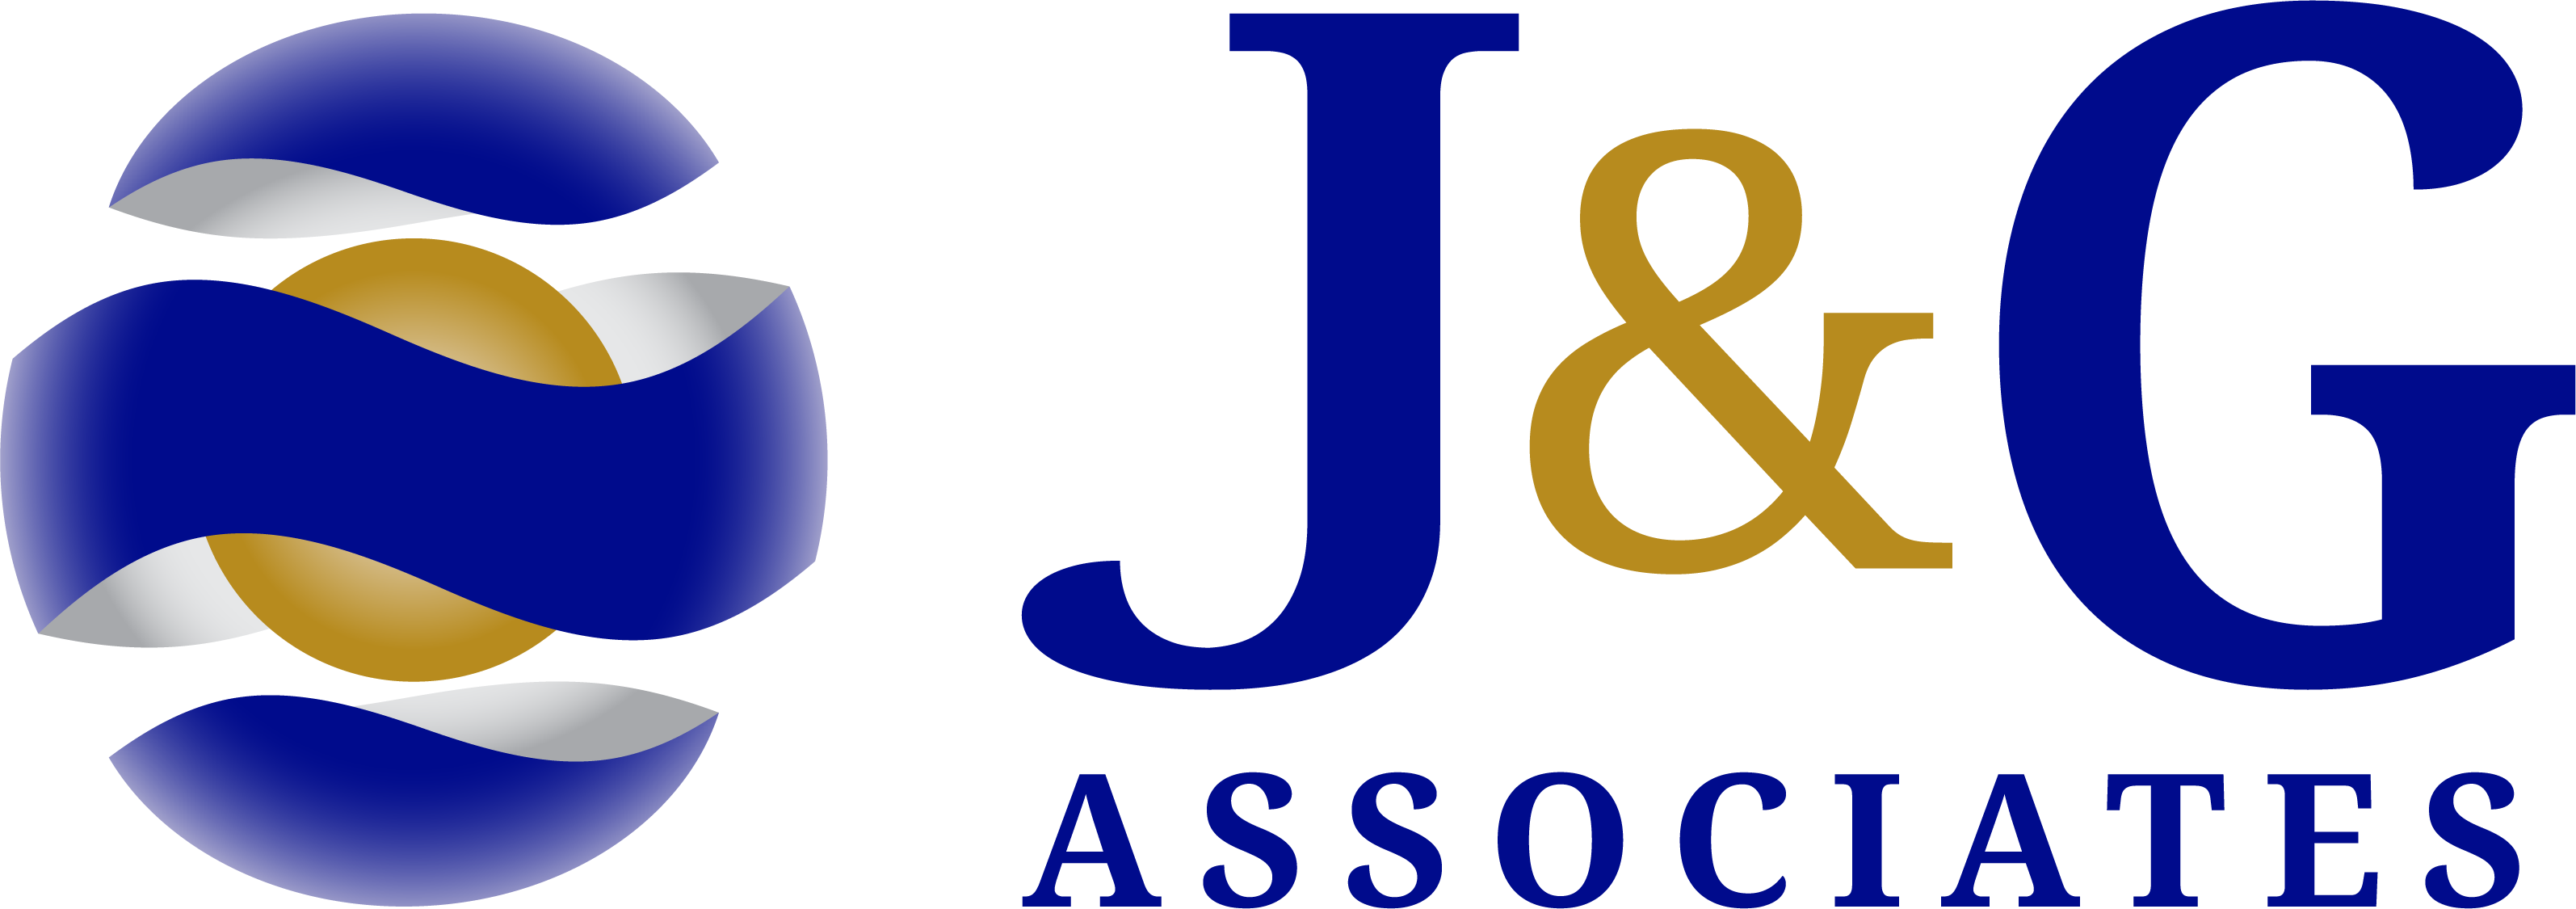 J&G Associates